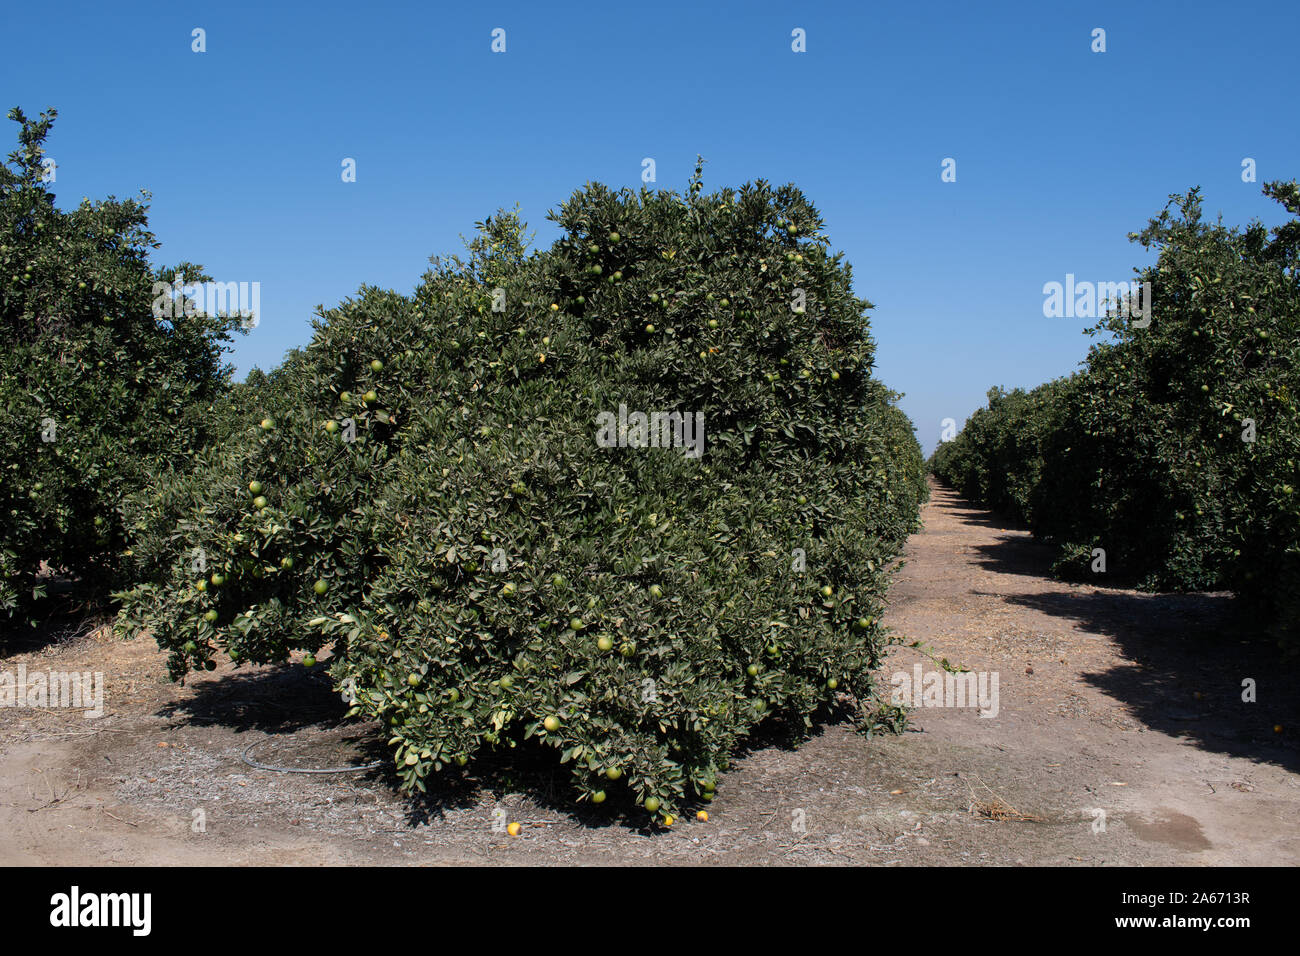 Citrus (Navel Oranges) trees in Autumn Stock Photo